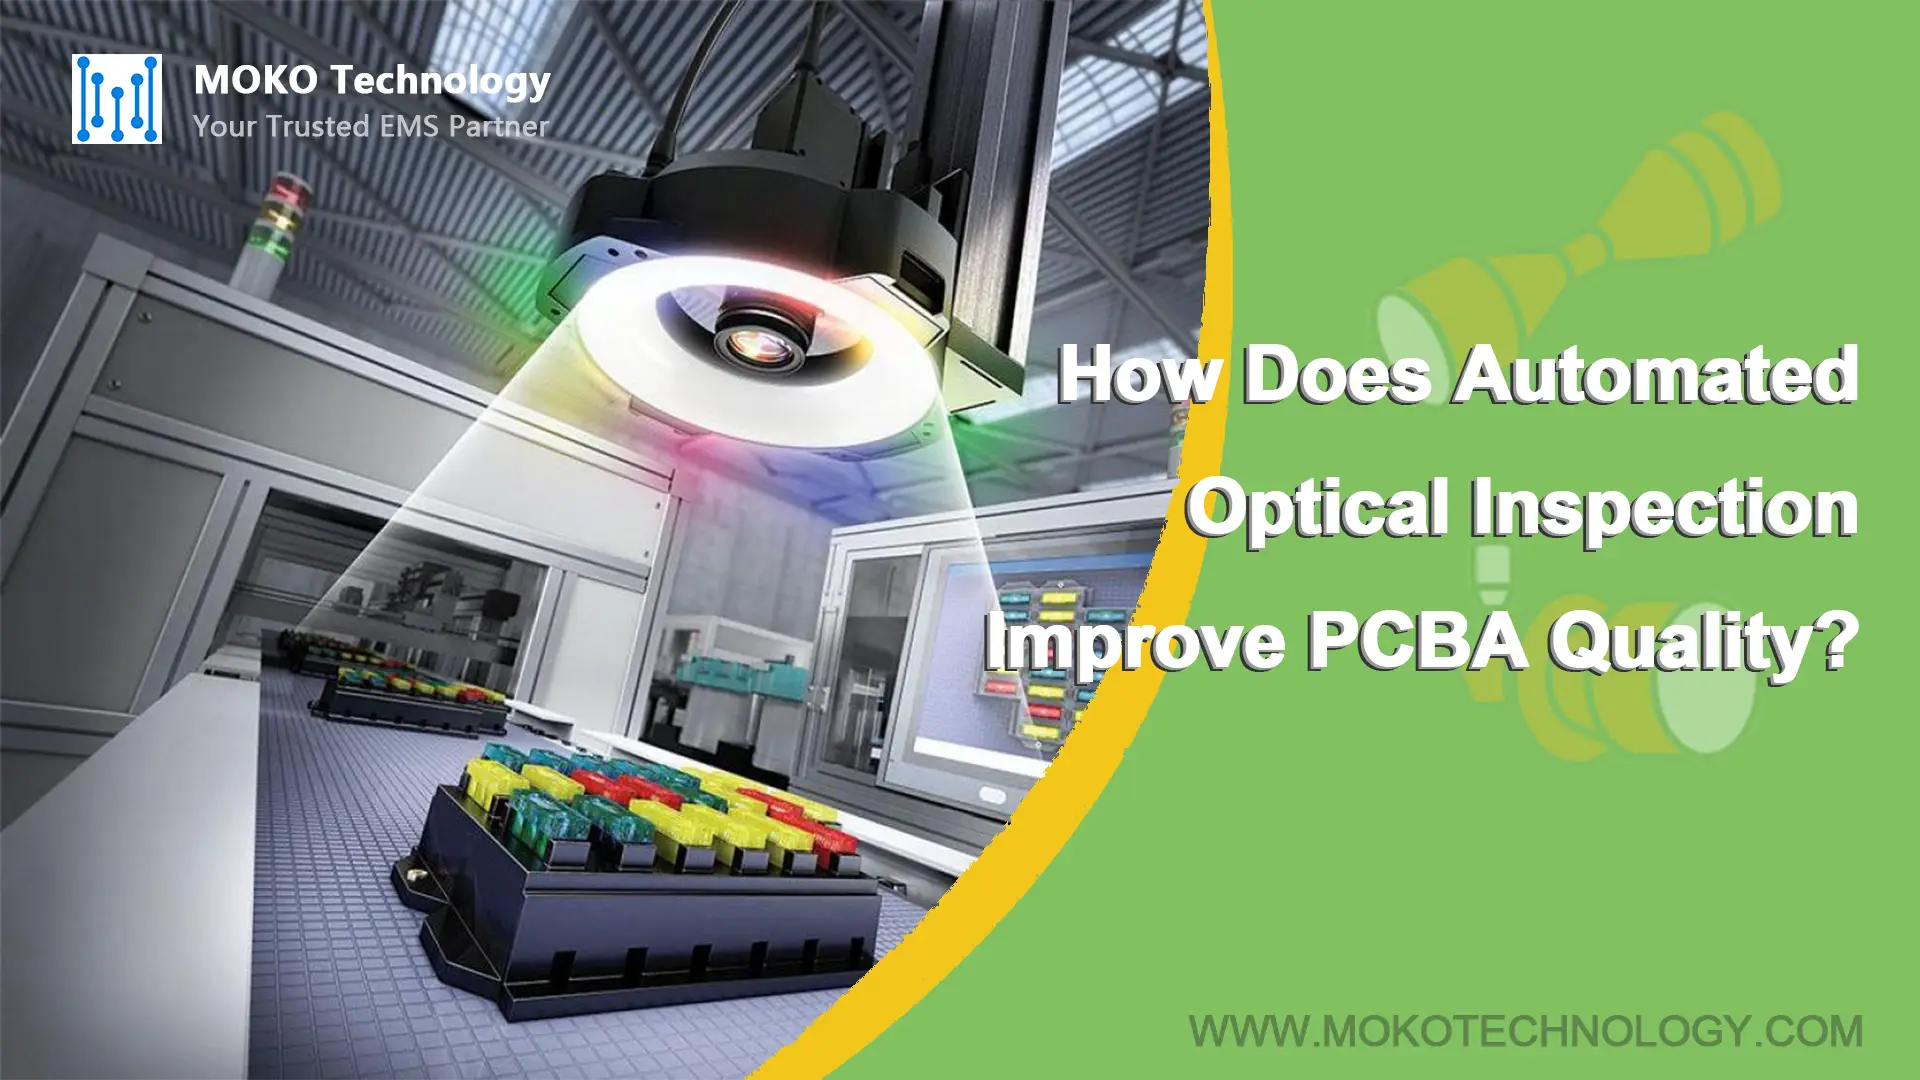 Wie verbessert die automatisierte optische Inspektion die PCBA-Qualität?